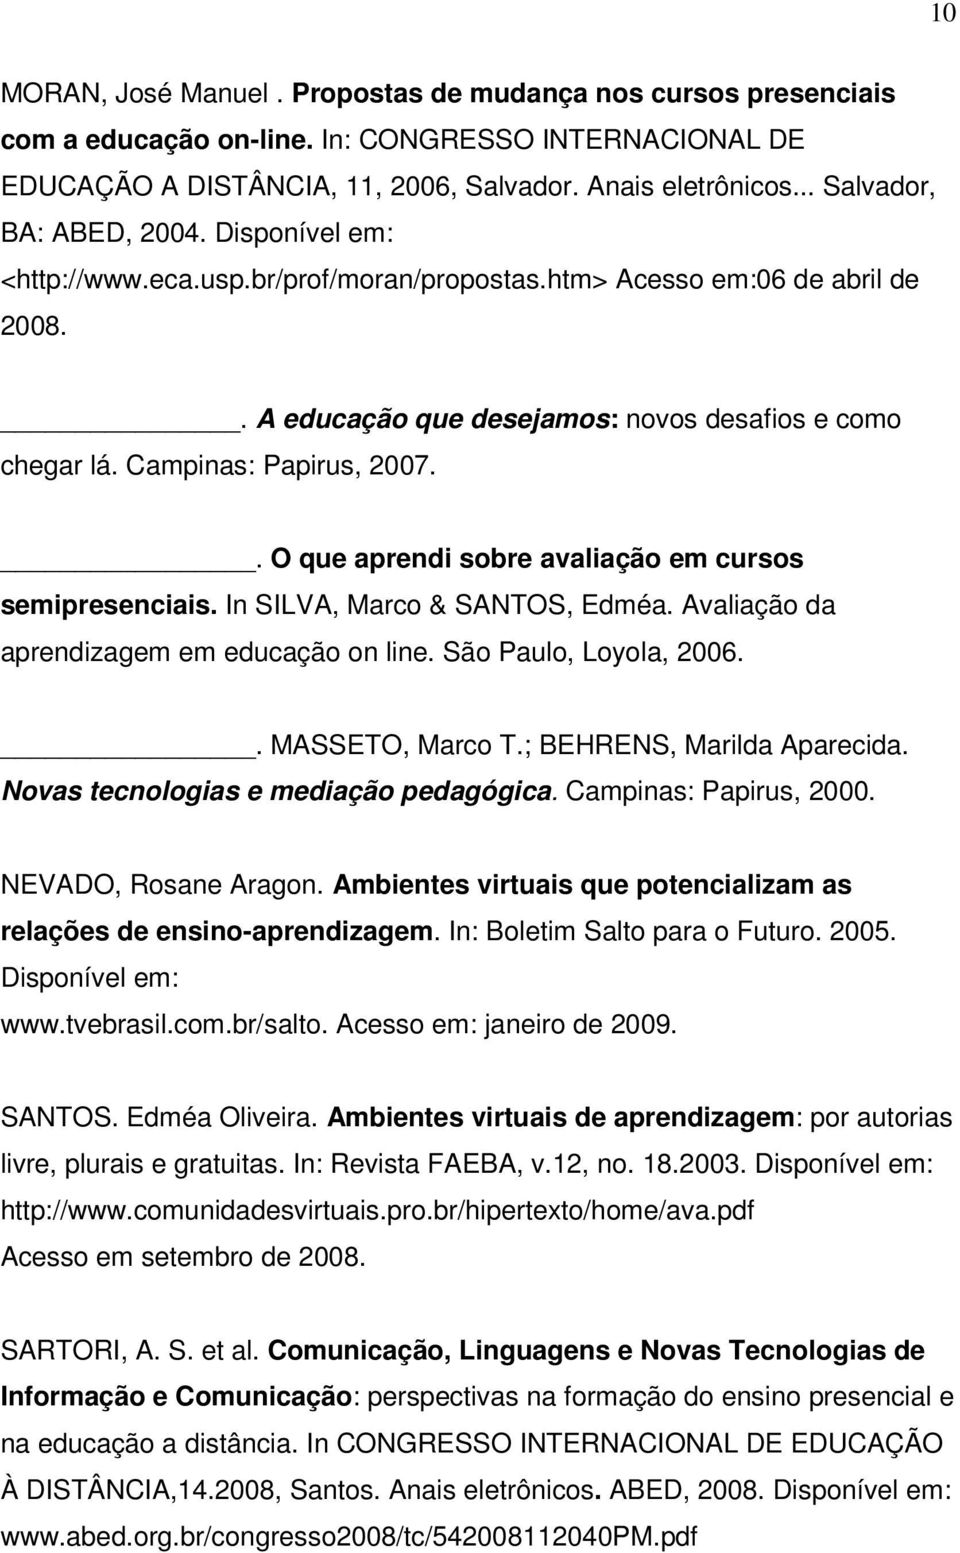 Campinas: Papirus, 2007.. O que aprendi sobre avaliação em cursos semipresenciais. In SILVA, Marco & SANTOS, Edméa. Avaliação da aprendizagem em educação on line. São Paulo, Loyola, 2006.